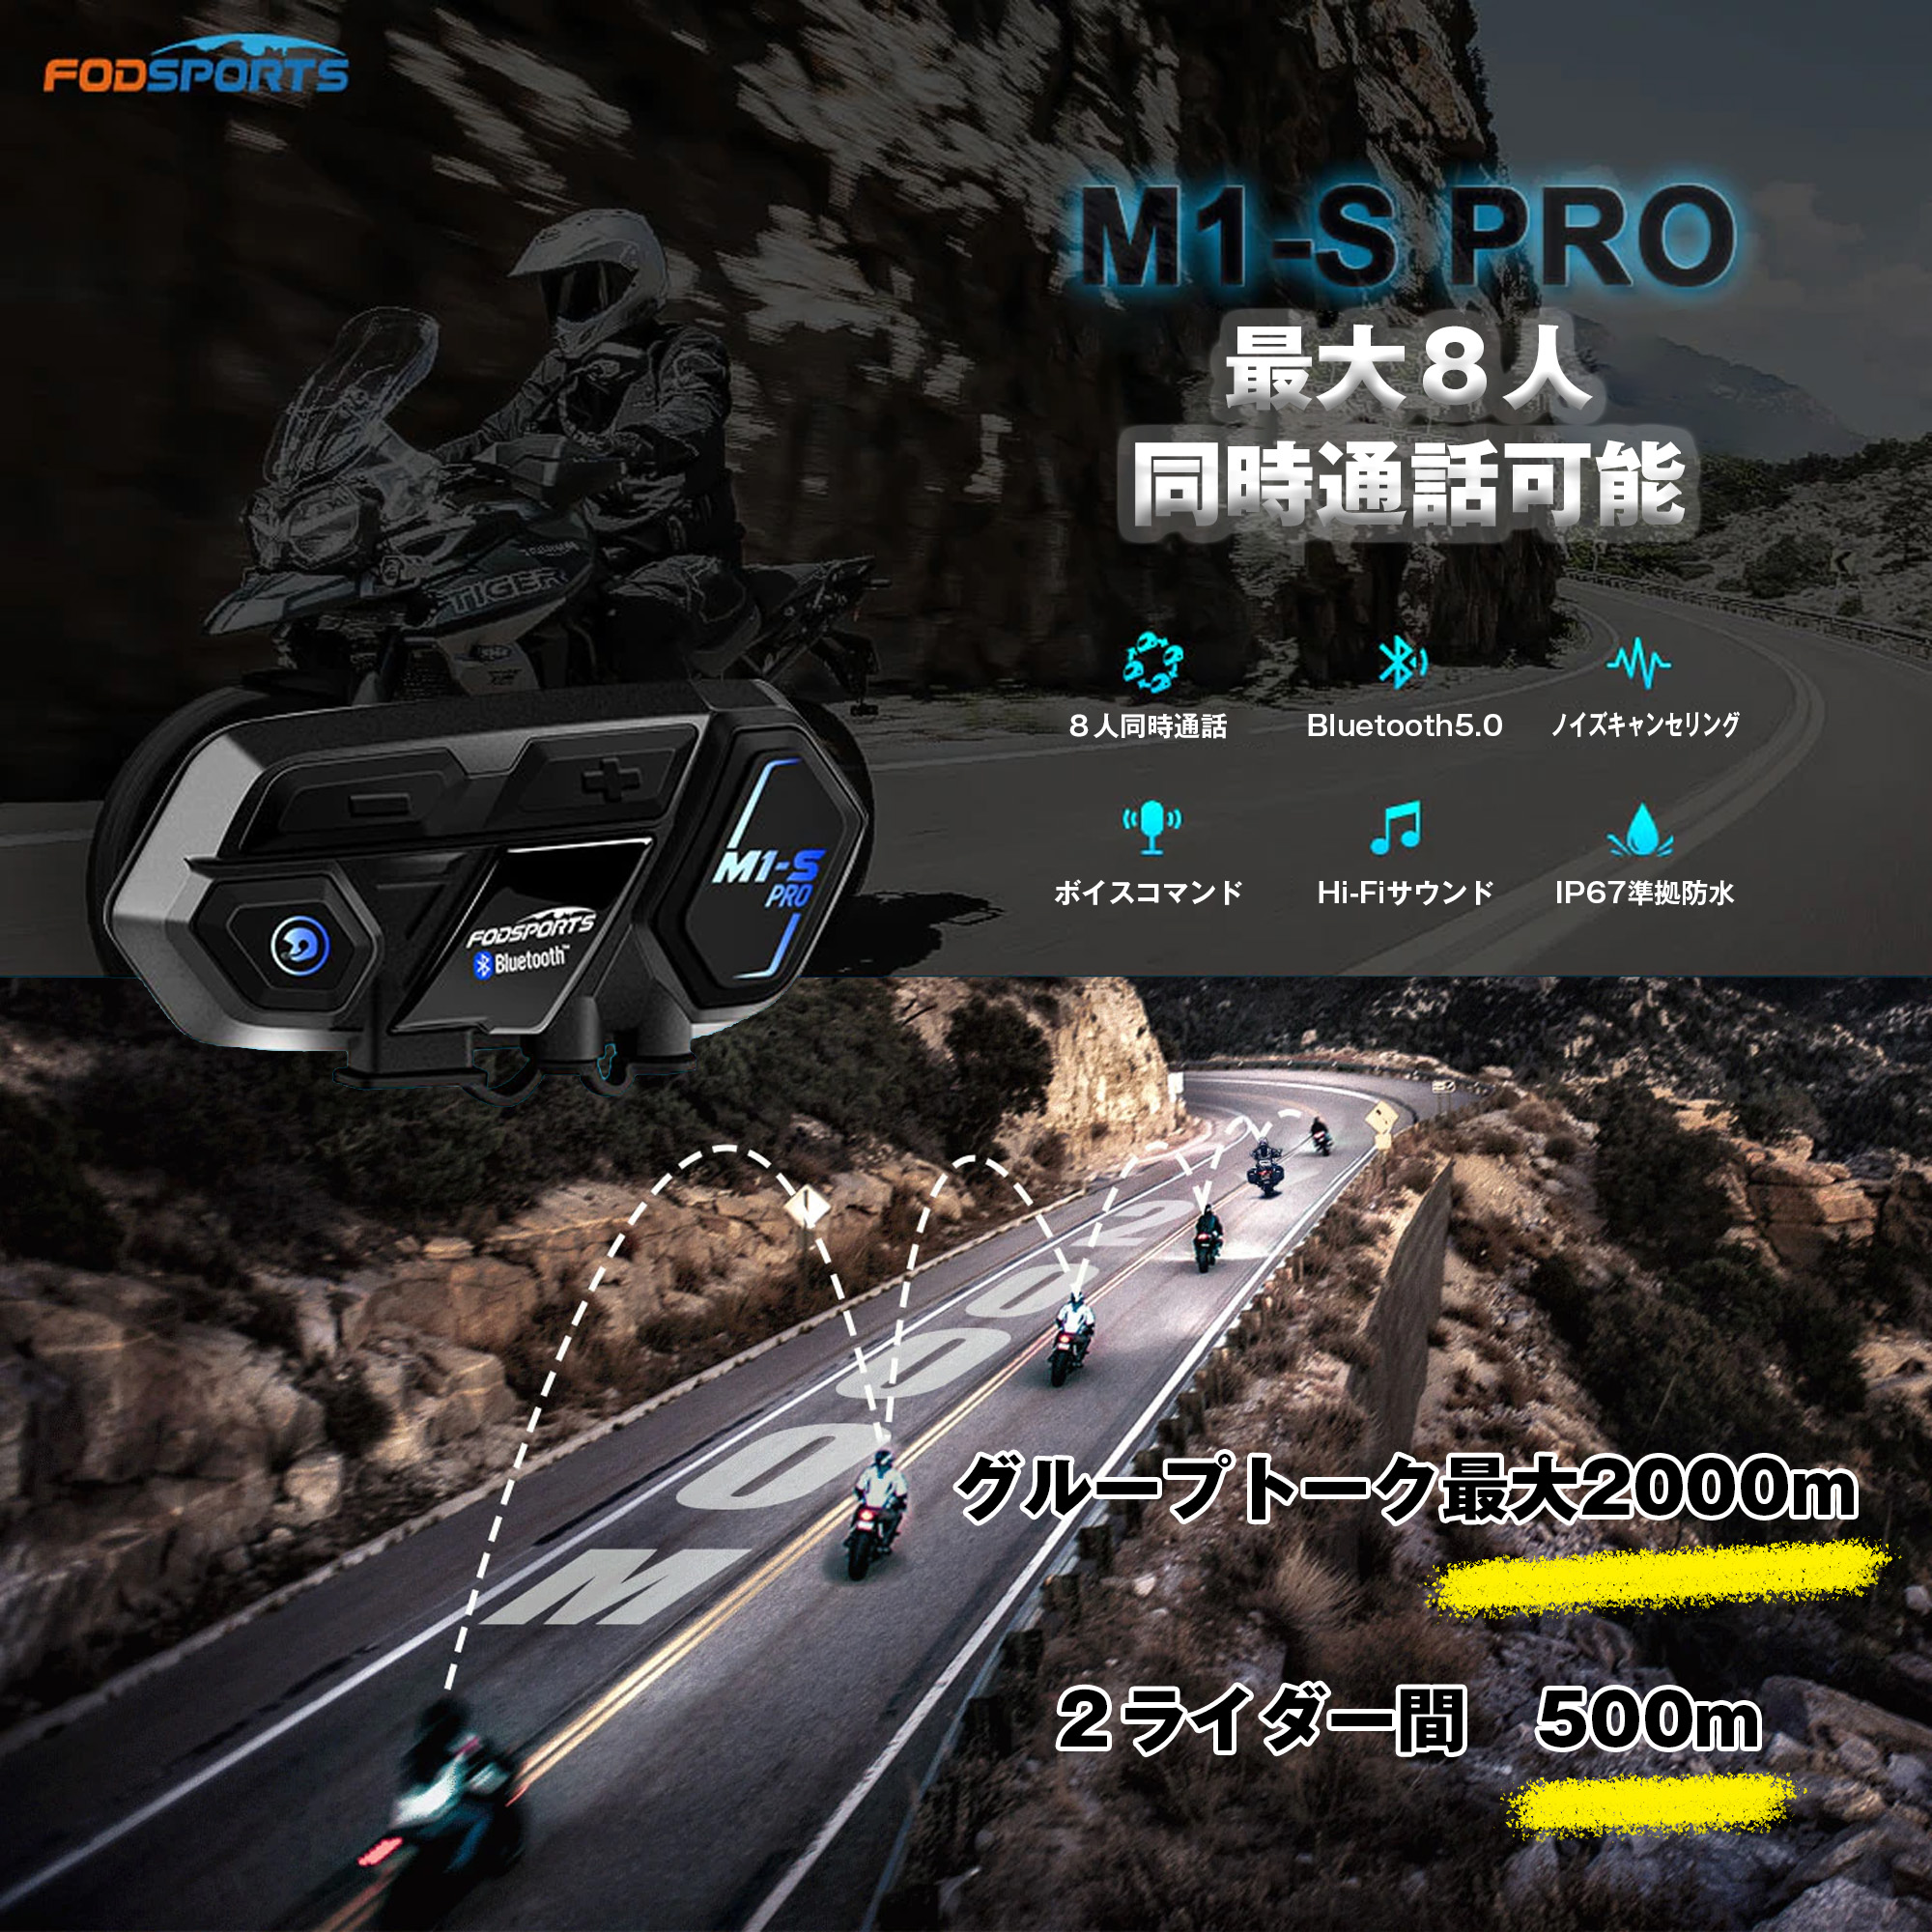 バイク インカム 正規品 FODSPORTS M1-S Pro 最大8人同時通話 Bluetooth5.0搭載 メーカー保証1年付 日本語音声案内  日本語説明書